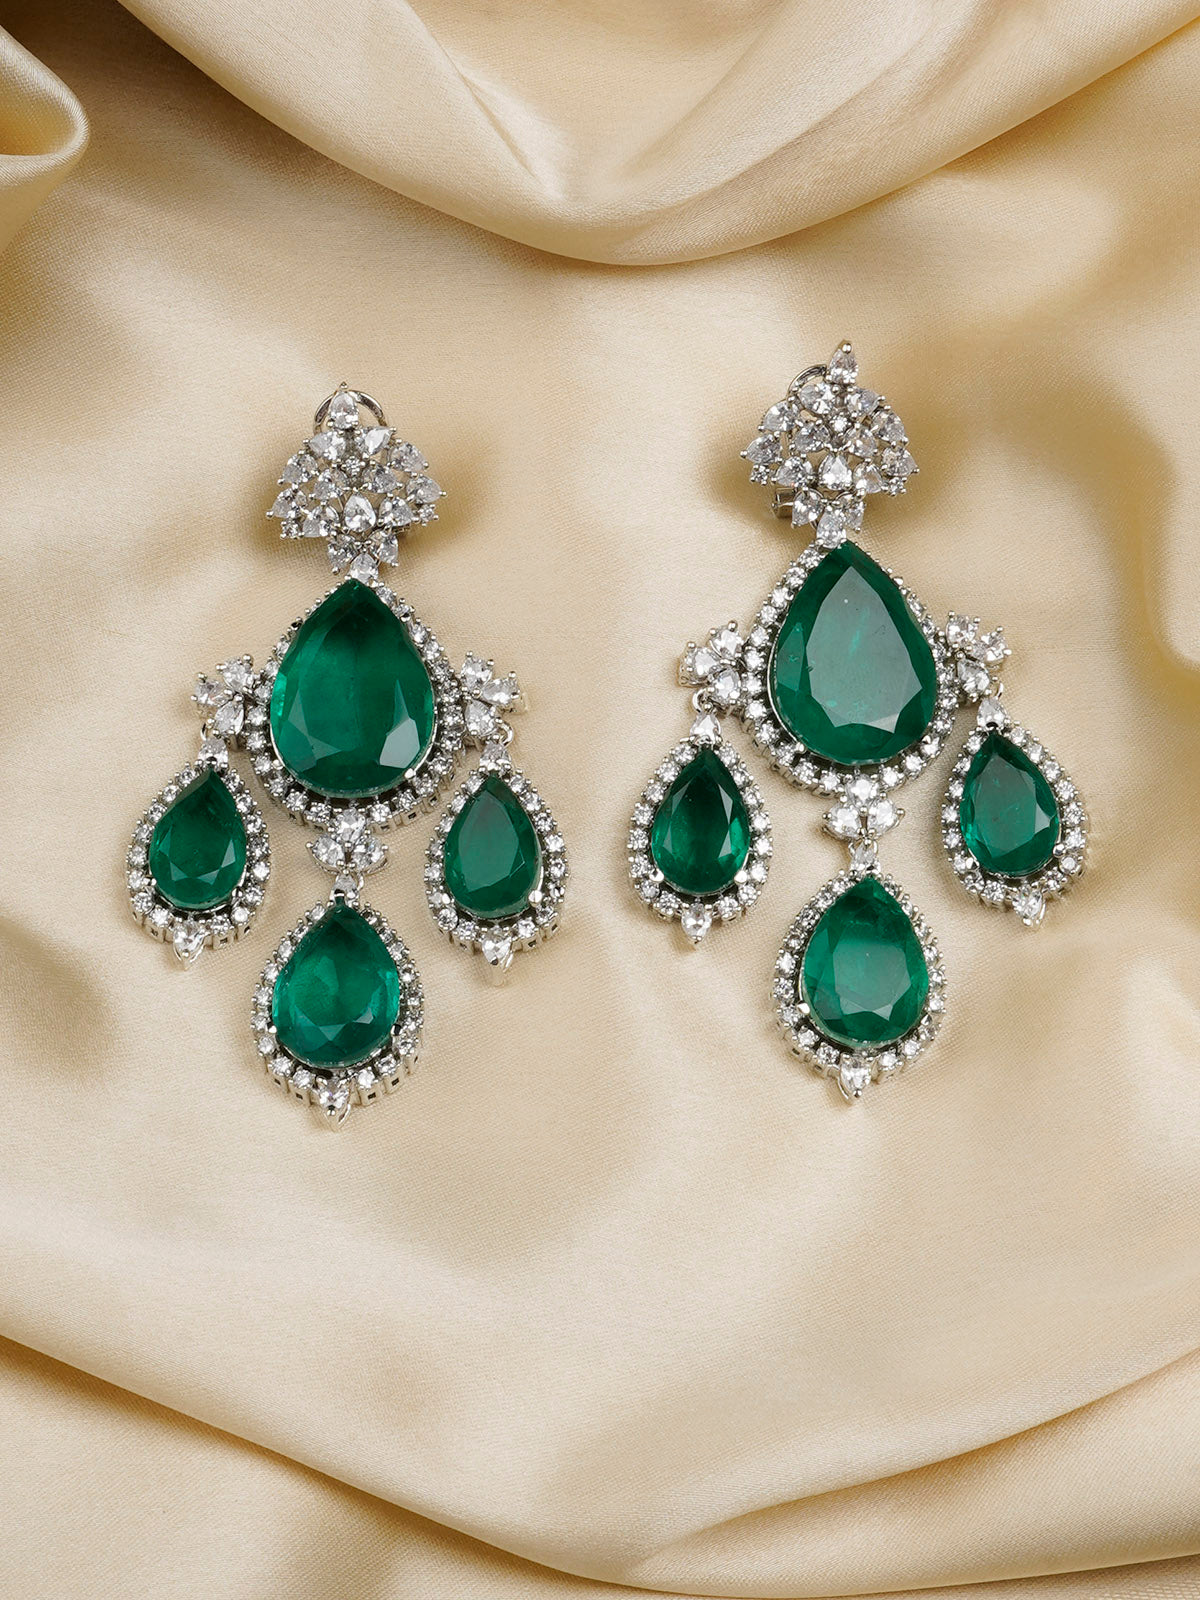 CZEAR540GR - Green Color Silver Plated Faux Diamond Earrings